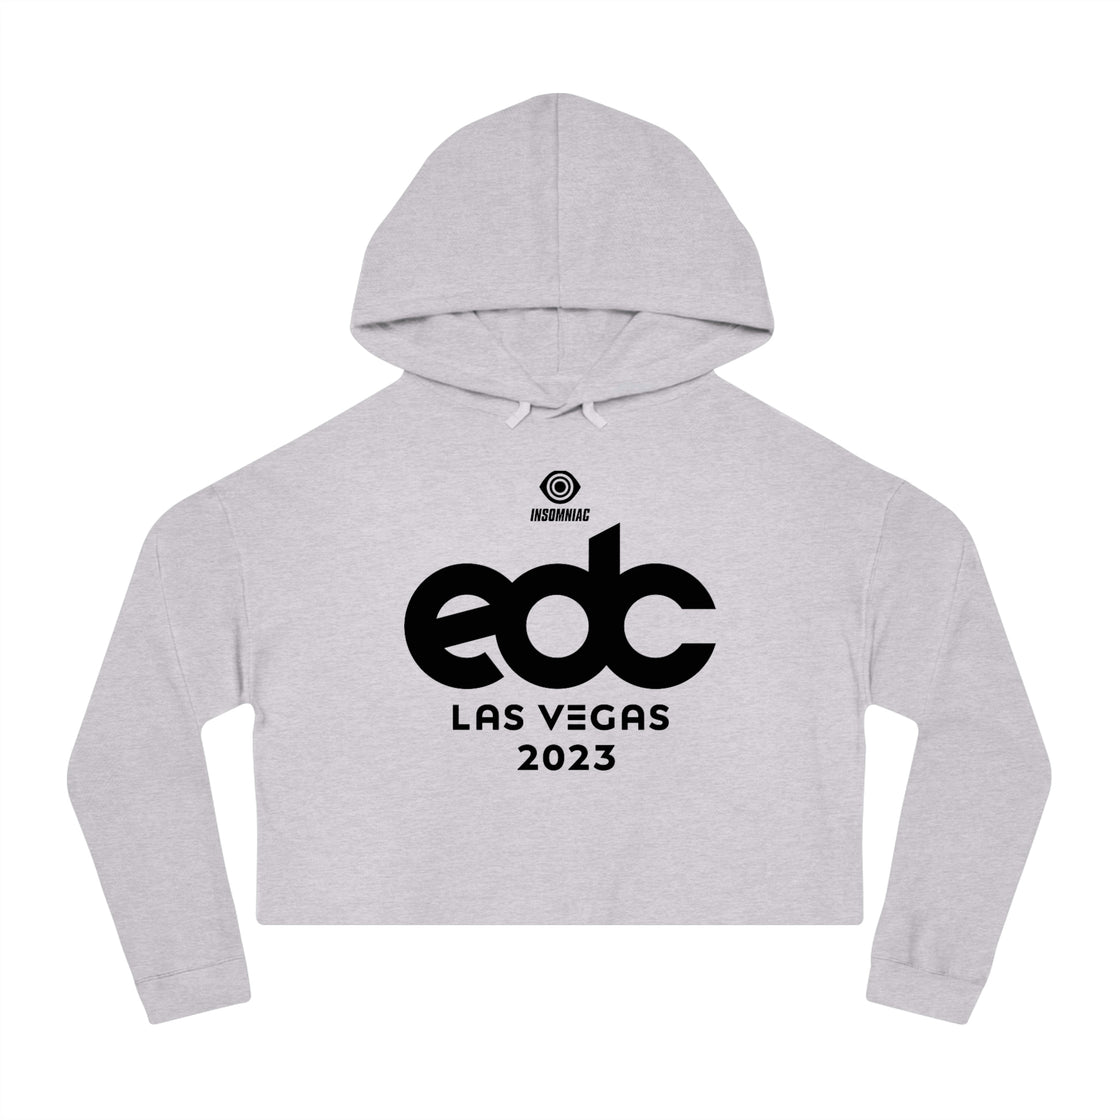 EDC Las Vegas Womens Cropped Hooded Sweatshirt Merch